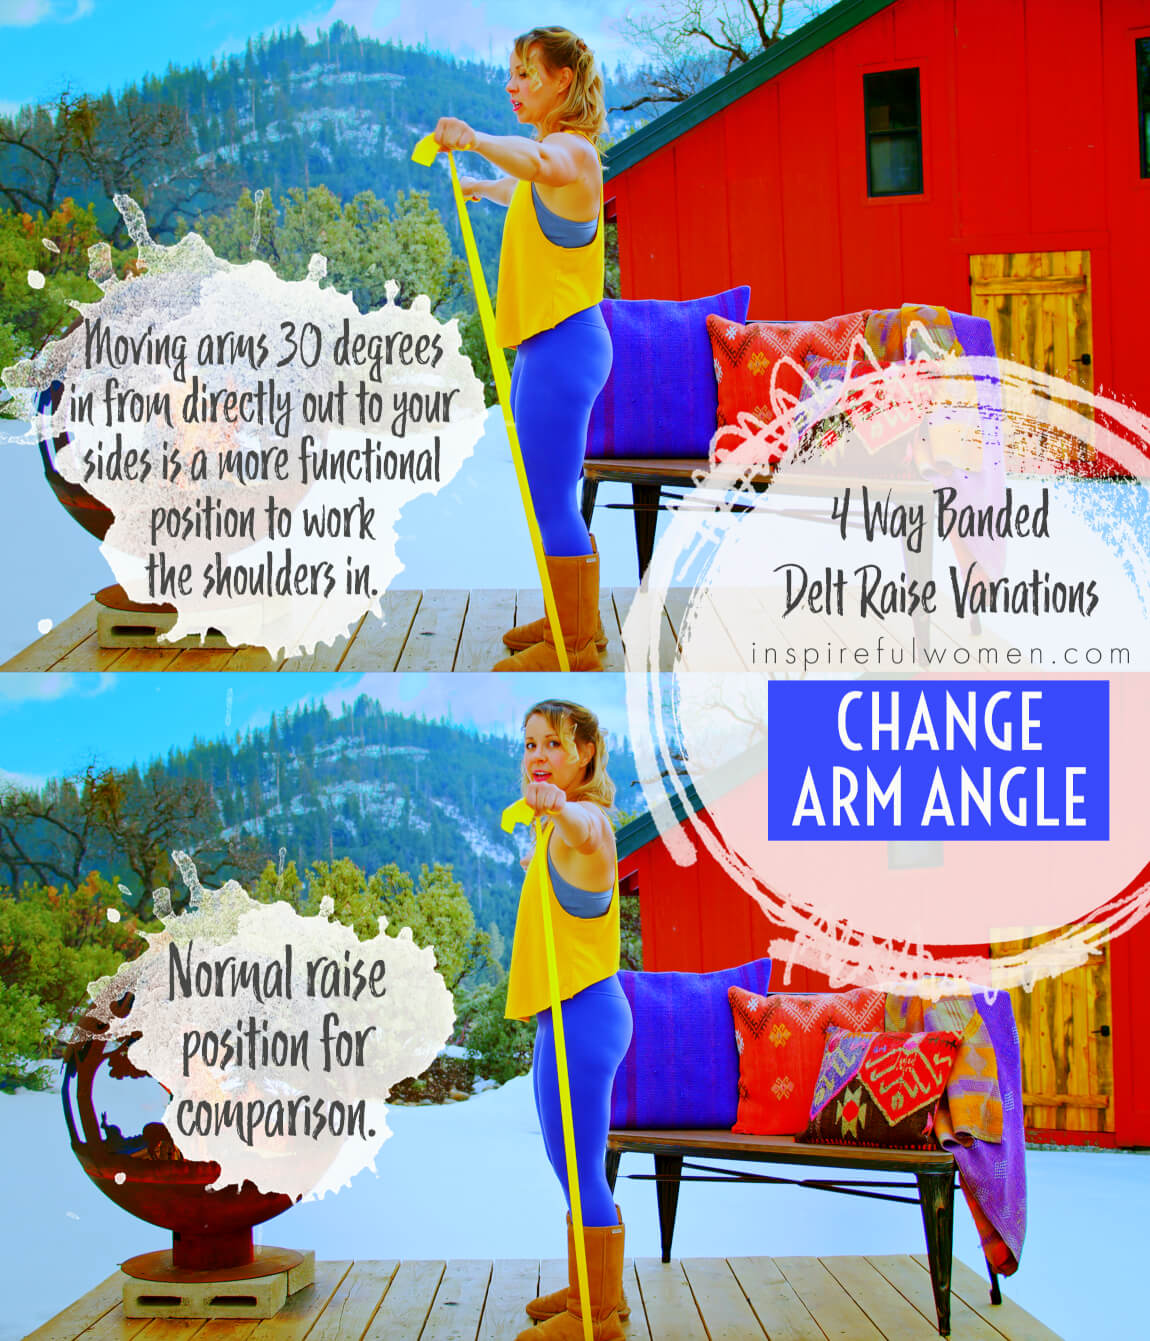 change-arm-angle-4-way-banded-delt-raise-shoulder-exercise-variation